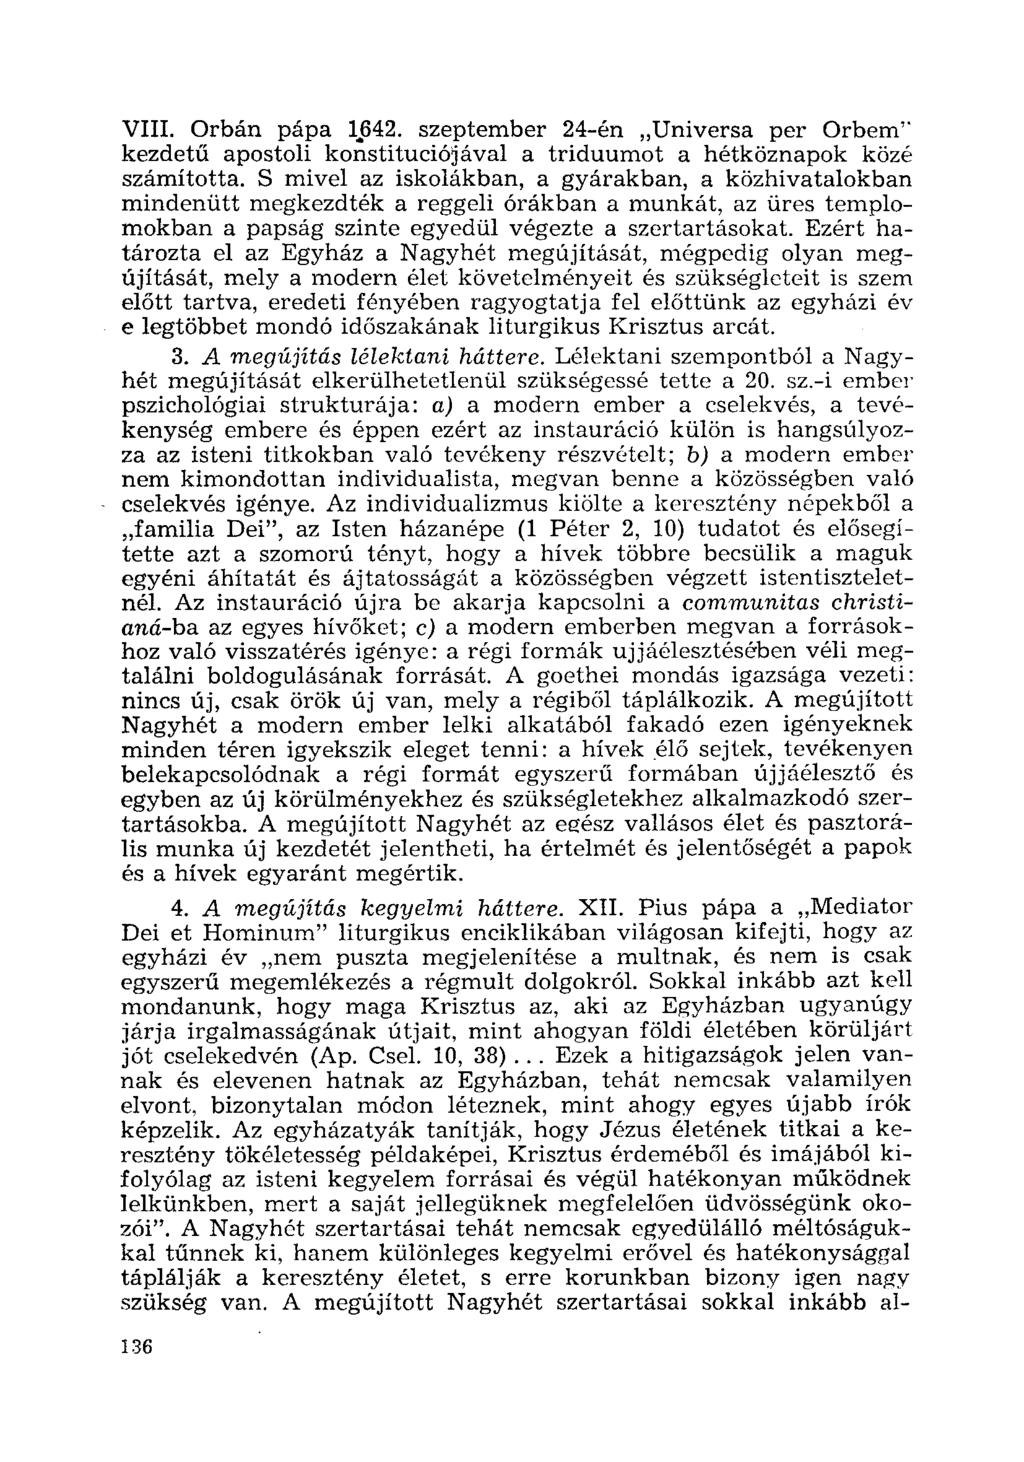 VIII. Orbán pápa 1.642. szeptember 24-én "Universa per Orbem" kezdetű apostoli konstituciójával a triduumot a hétköznapok közé számította.